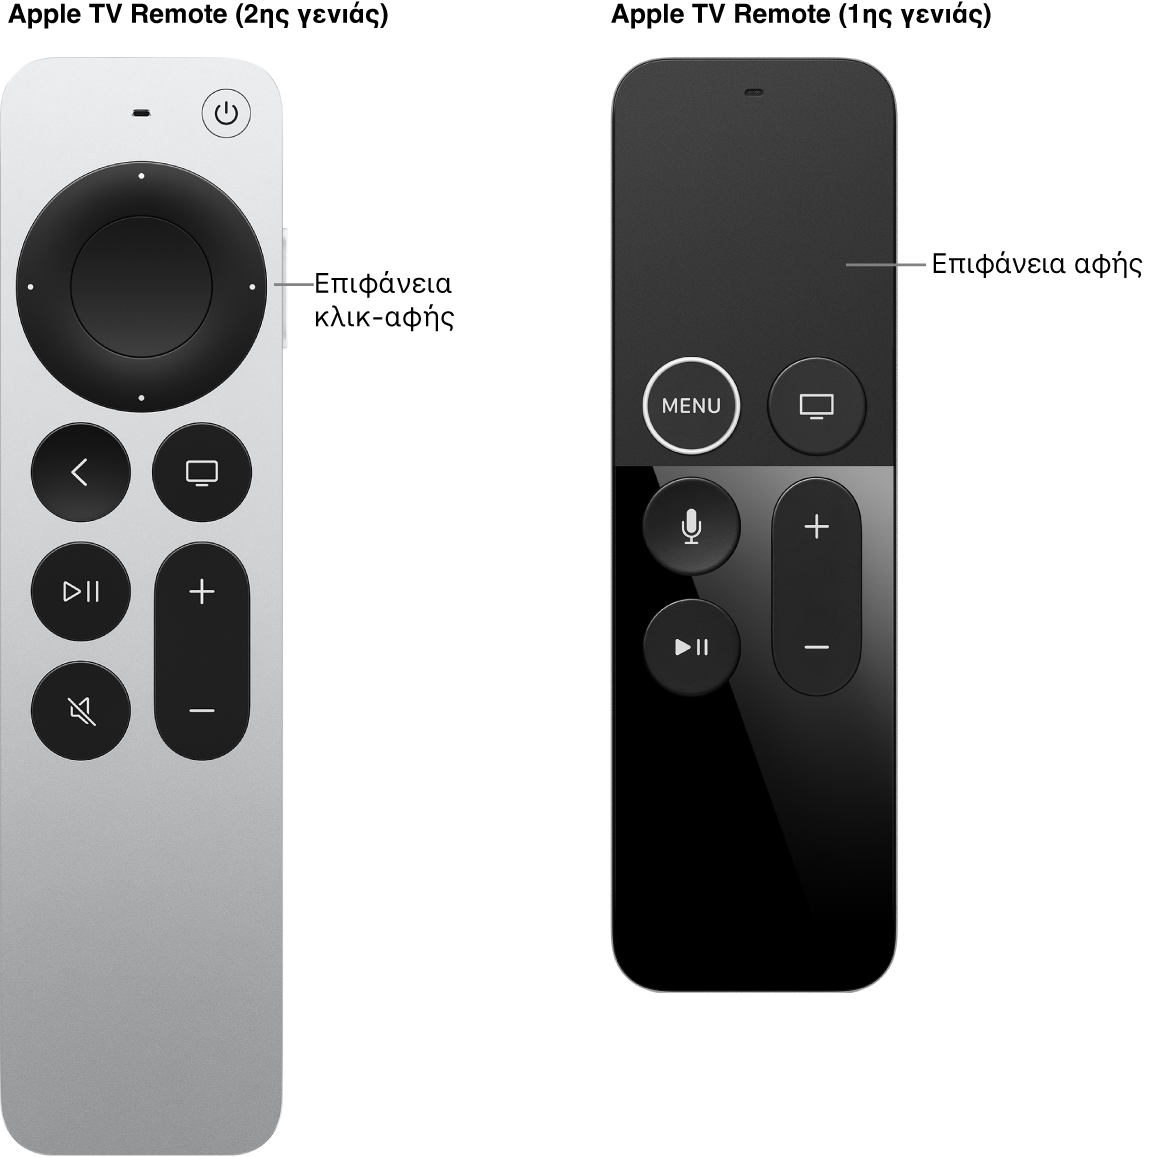 Το Apple TV Remote (2ης γενιάς) με επιφάνεια κλικ και το Apple TV Remote (1ης γενιάς) με επιφάνεια αφής